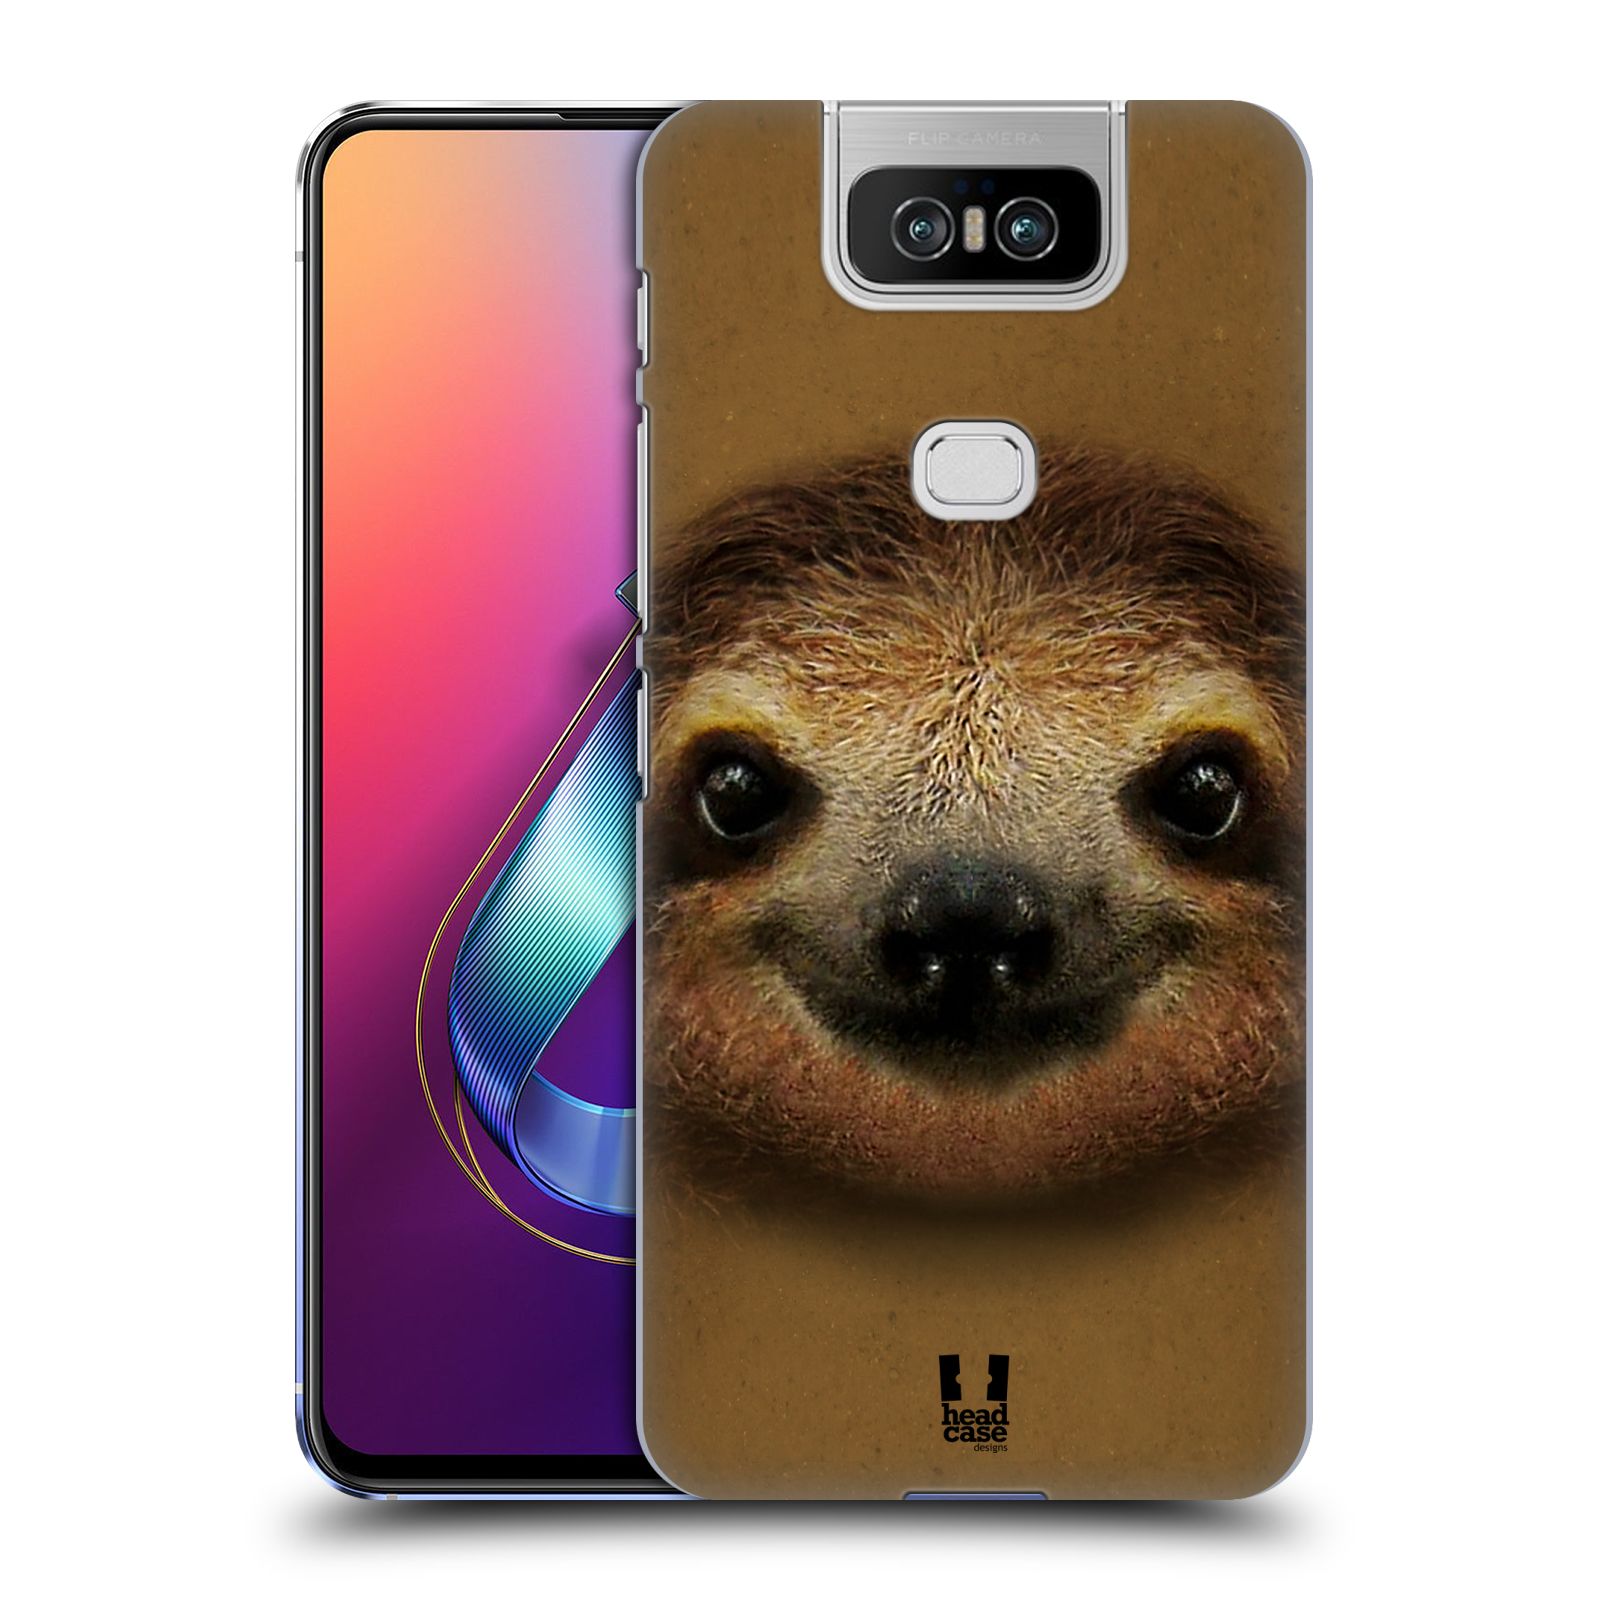 Pouzdro na mobil Asus Zenfone 6 ZS630KL - HEAD CASE - vzor Zvířecí tváře 2 lenochod